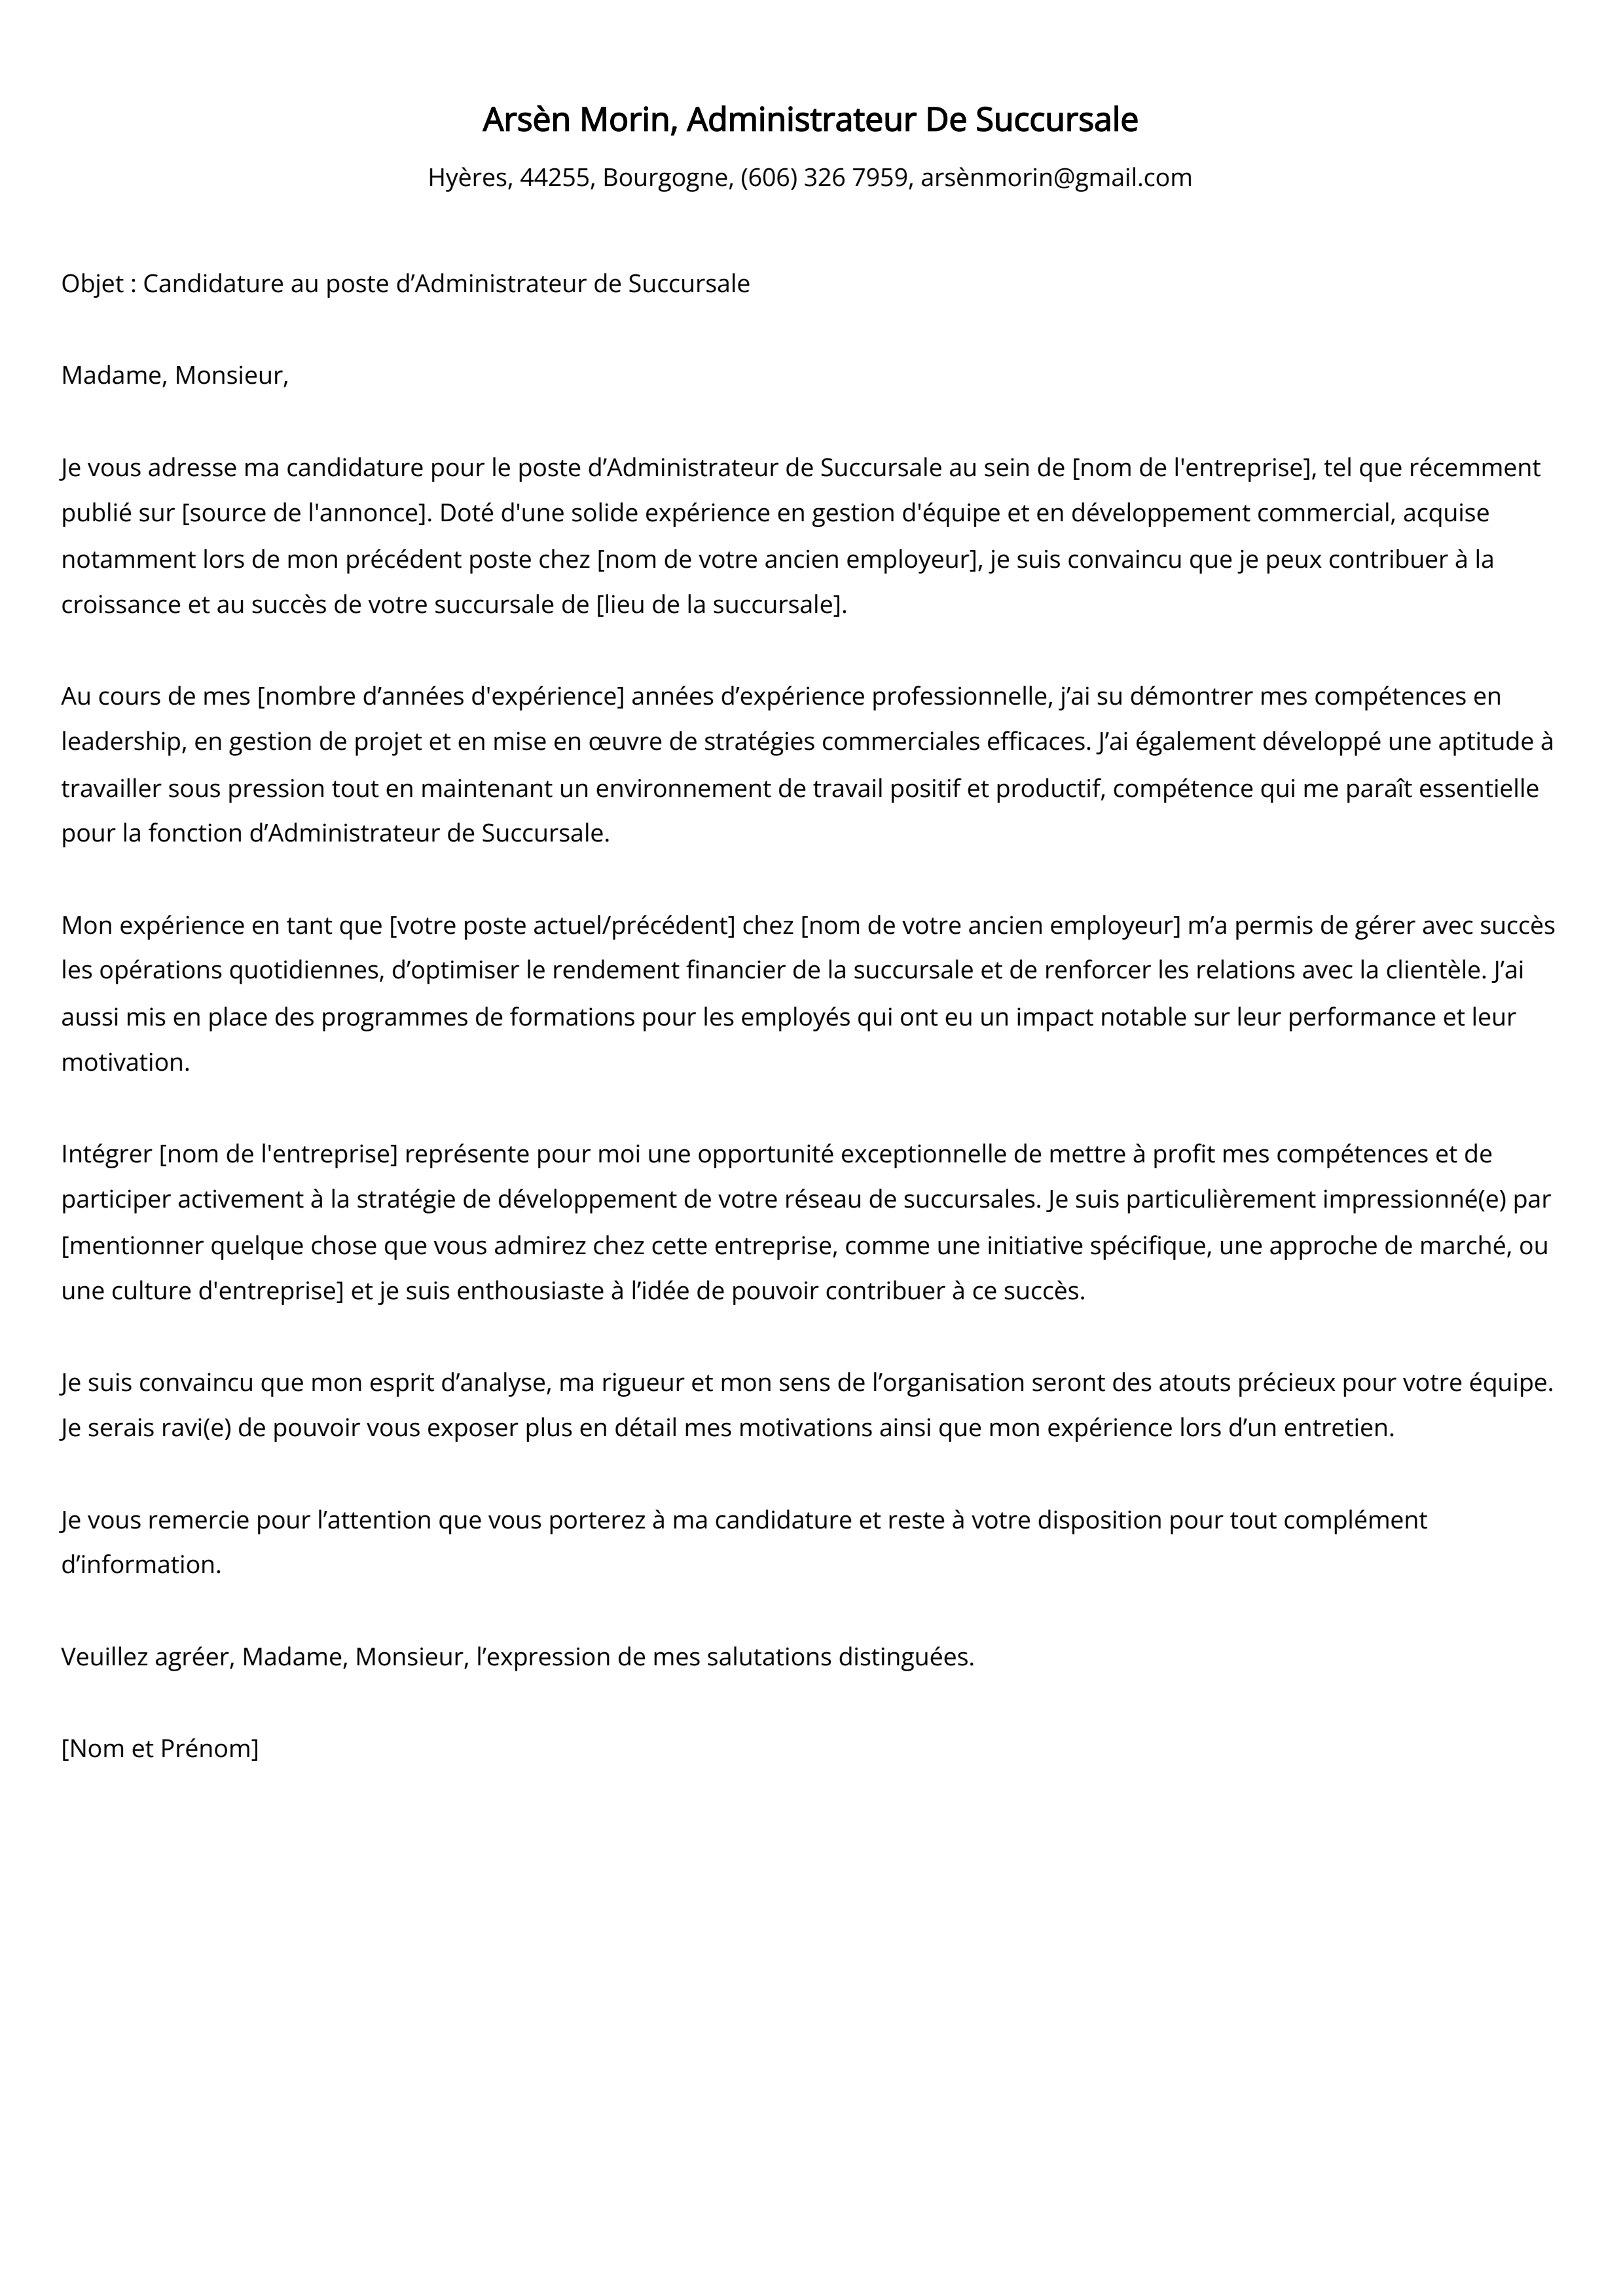 Administrateur De Succursale Cover Letter Example